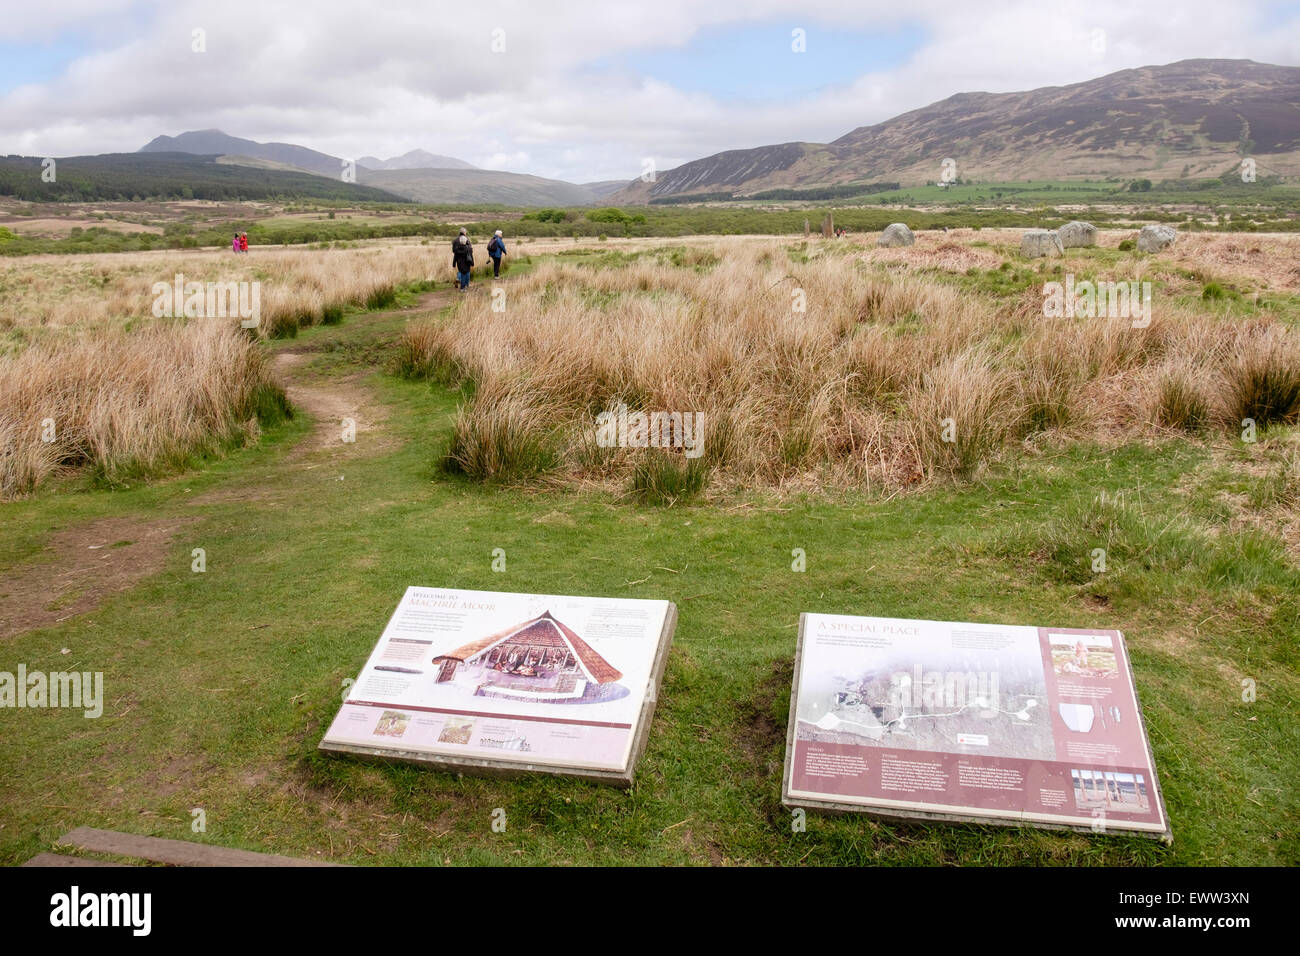 Panneaux d'informations pour visiteur Machrie Moor cercles de pierre sur l'île d'Arran, North Ayrshire, Strathclyde, Écosse, Royaume-Uni, Angleterre Banque D'Images